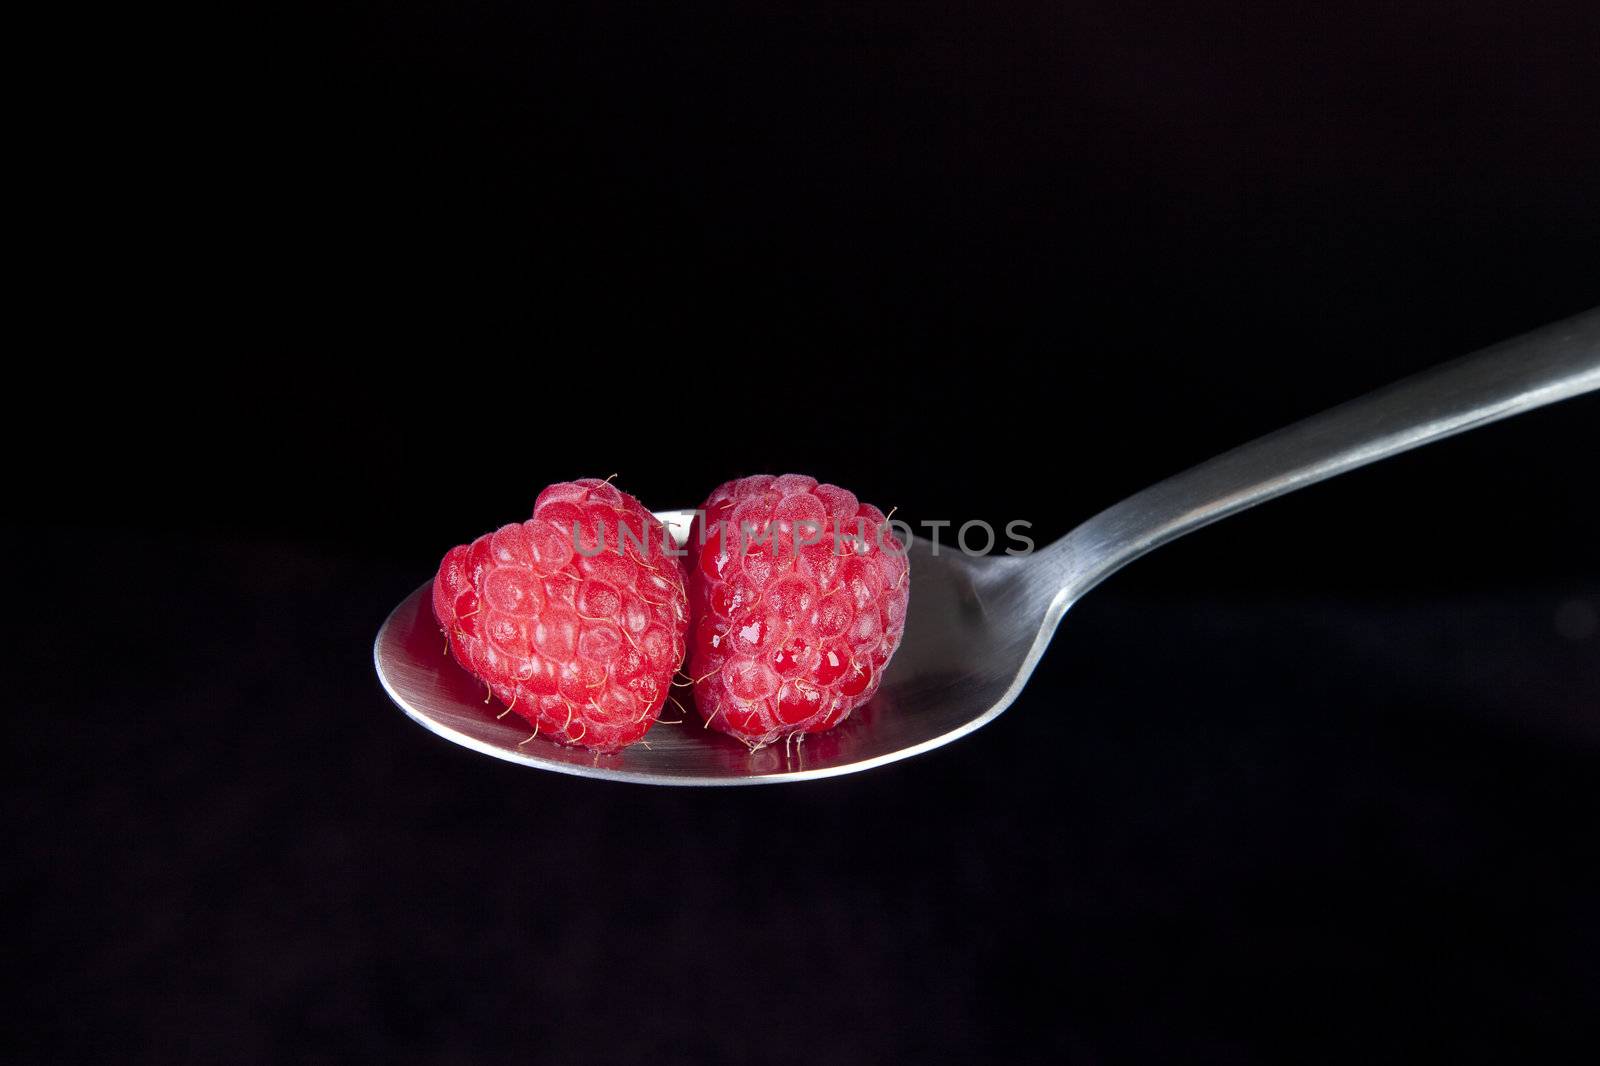 Raspberries on Spoon by charlotteLake